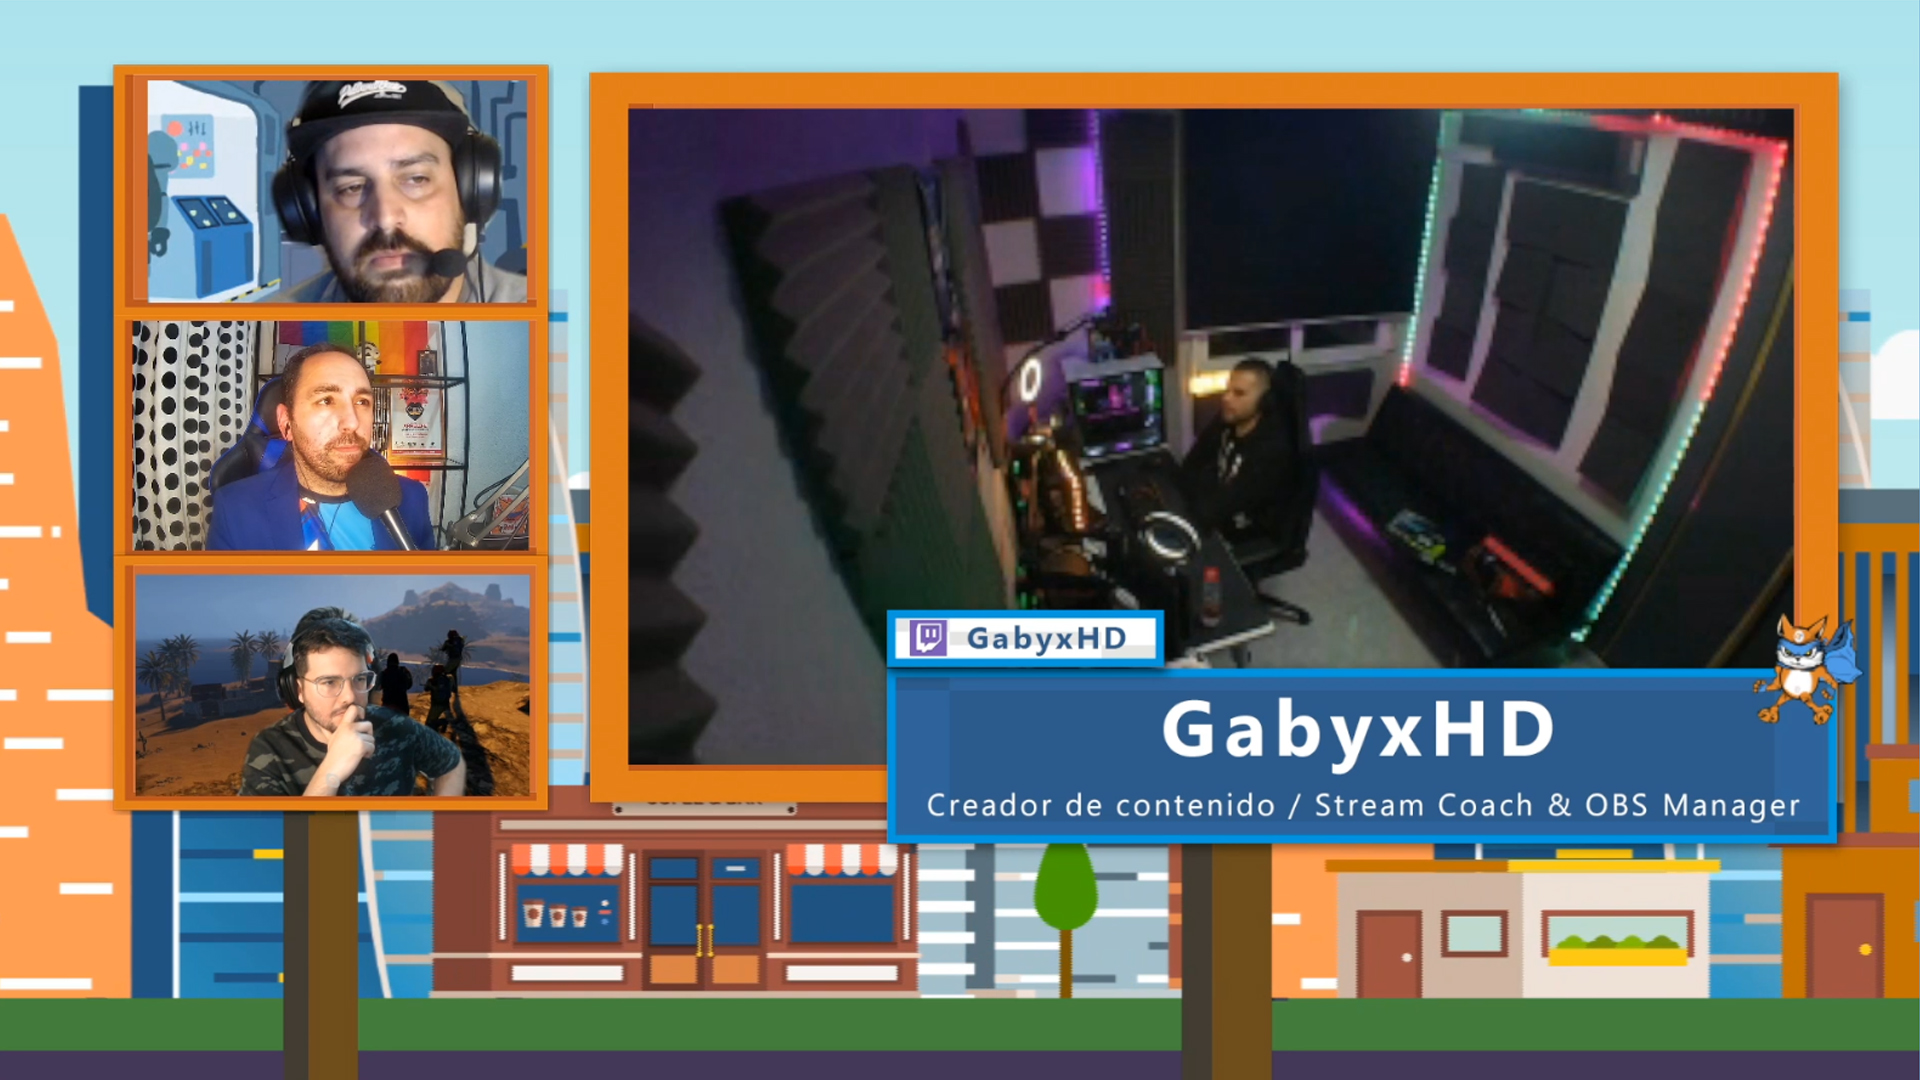 GabyxHD, invitado especial de este último videopodcast semanal